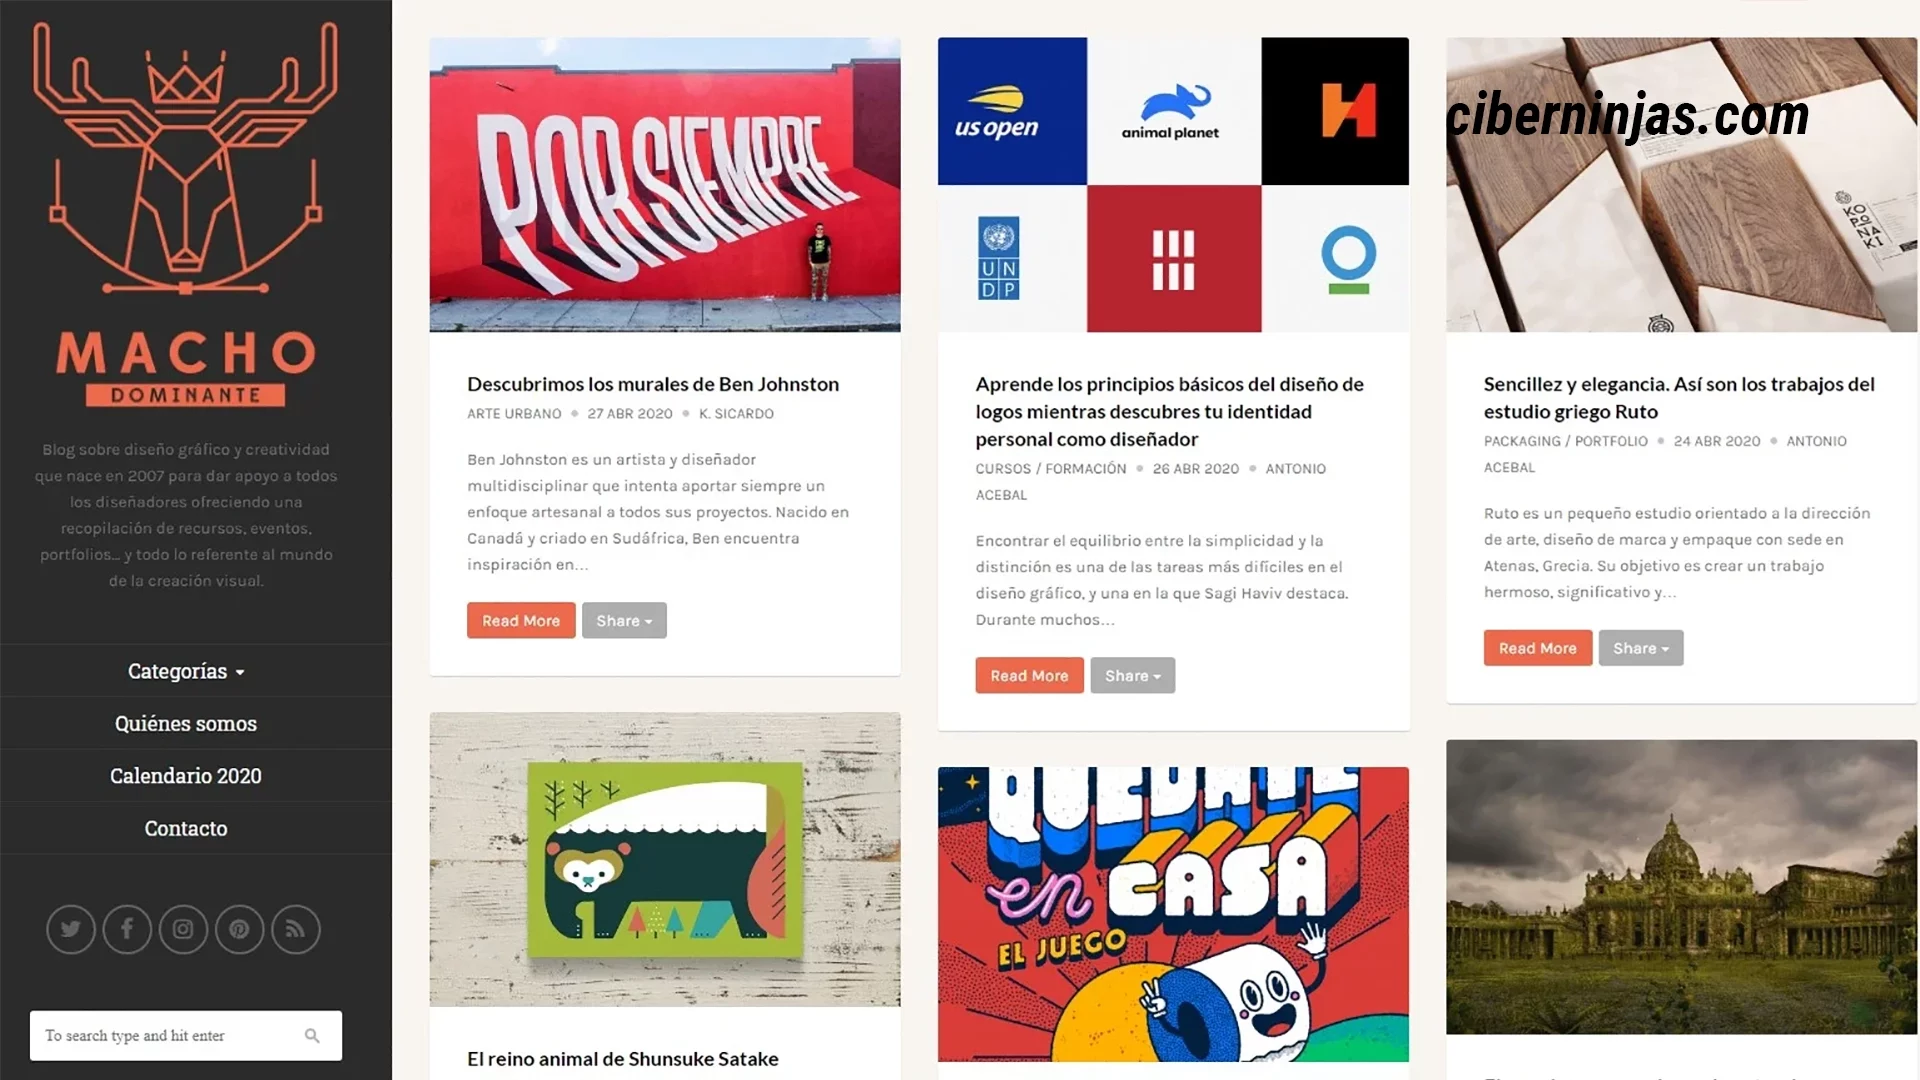 Macho Dominante: Uno de los mejores blogs de diseño en español